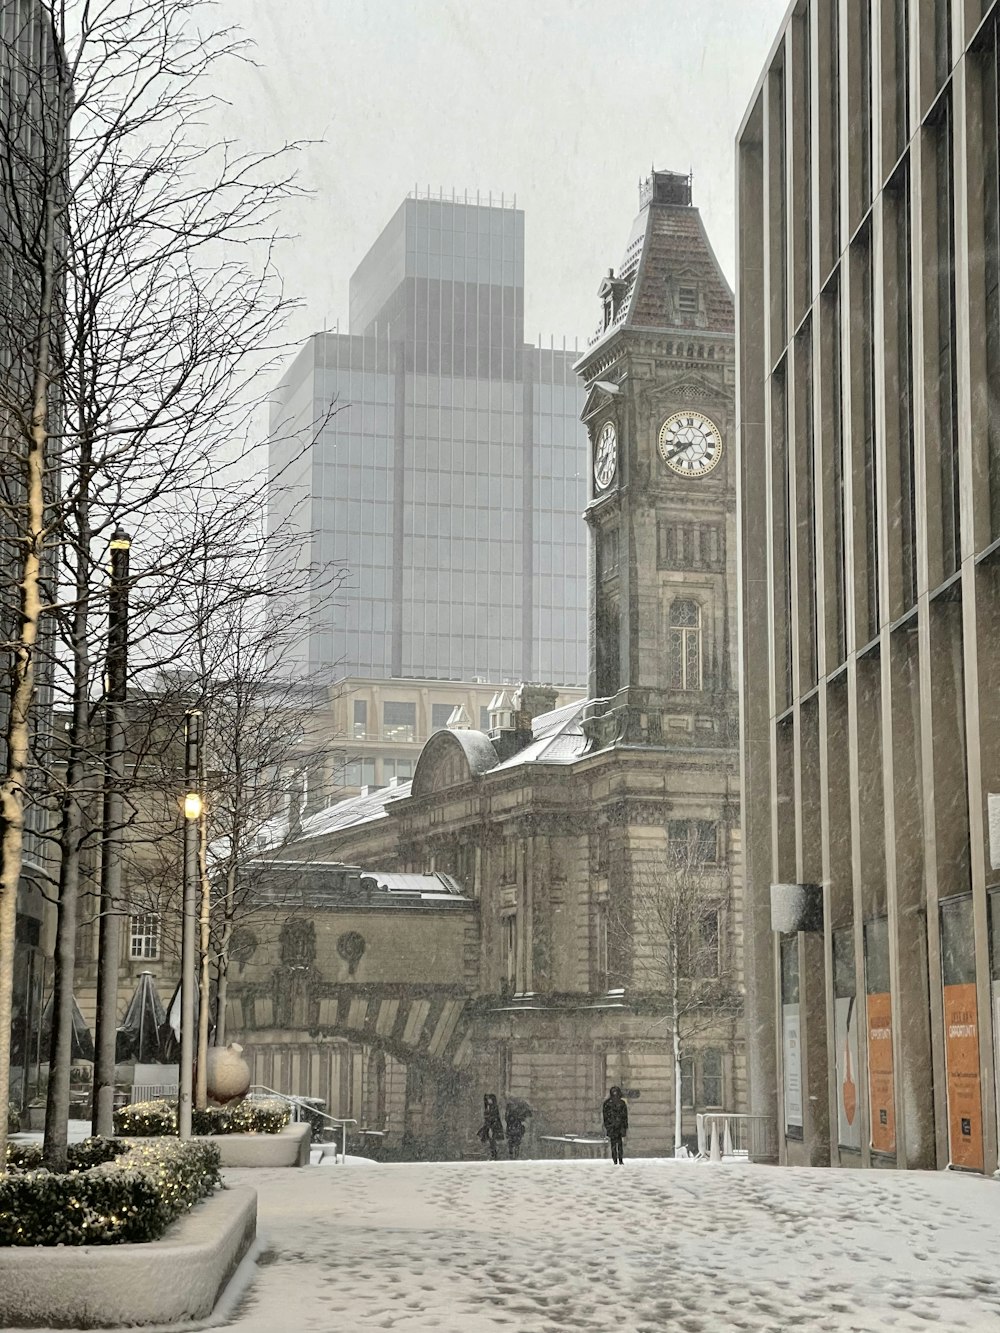 uma torre do relógio no meio de uma cidade nevada